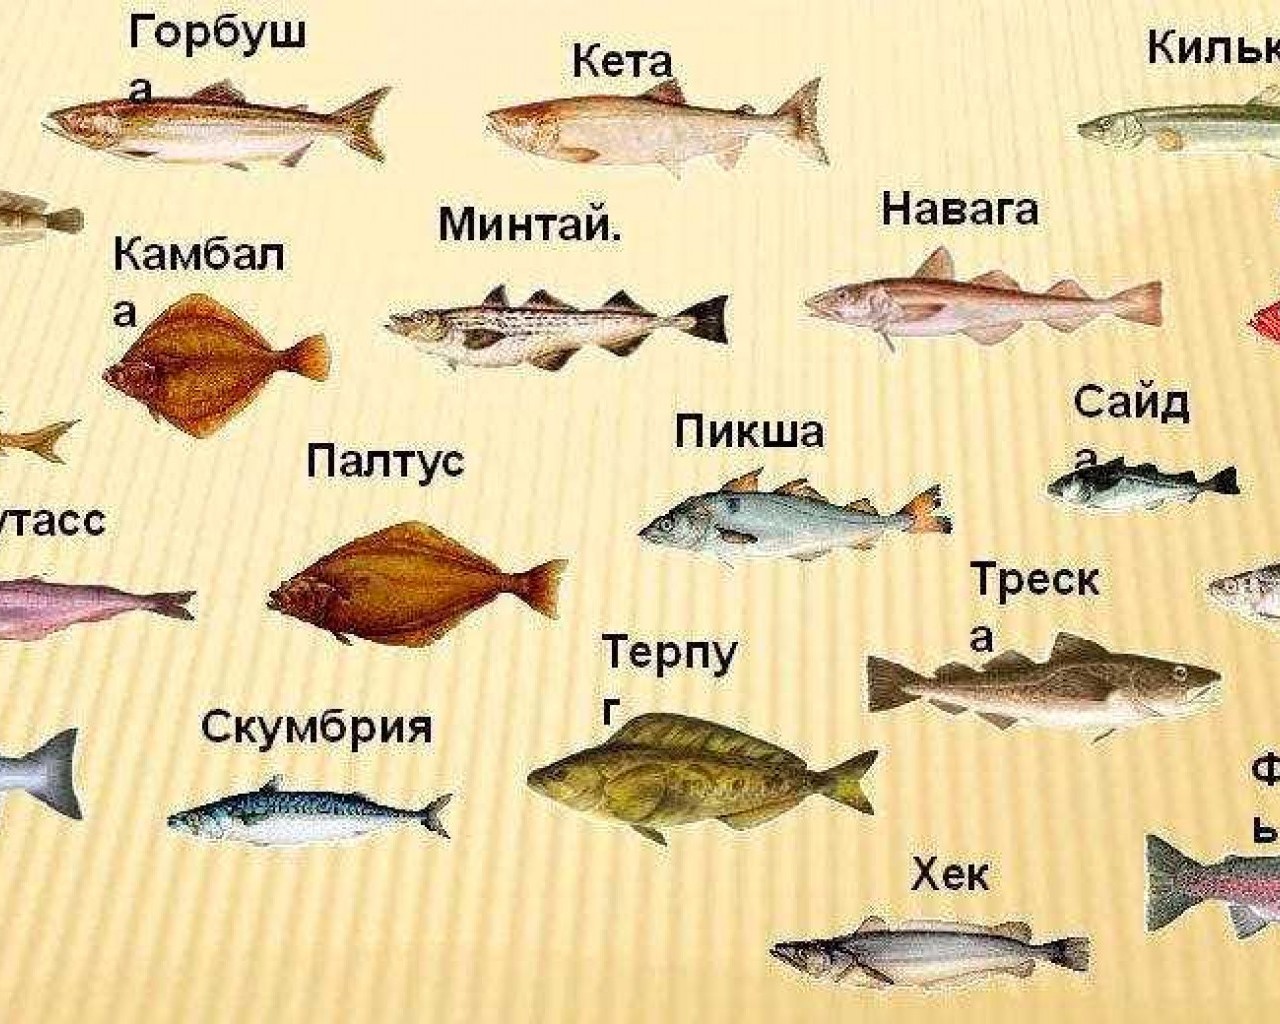 Разнообразие видов рыб в мировом океане и пресноводных водоемах - повседневные и экзотические представители